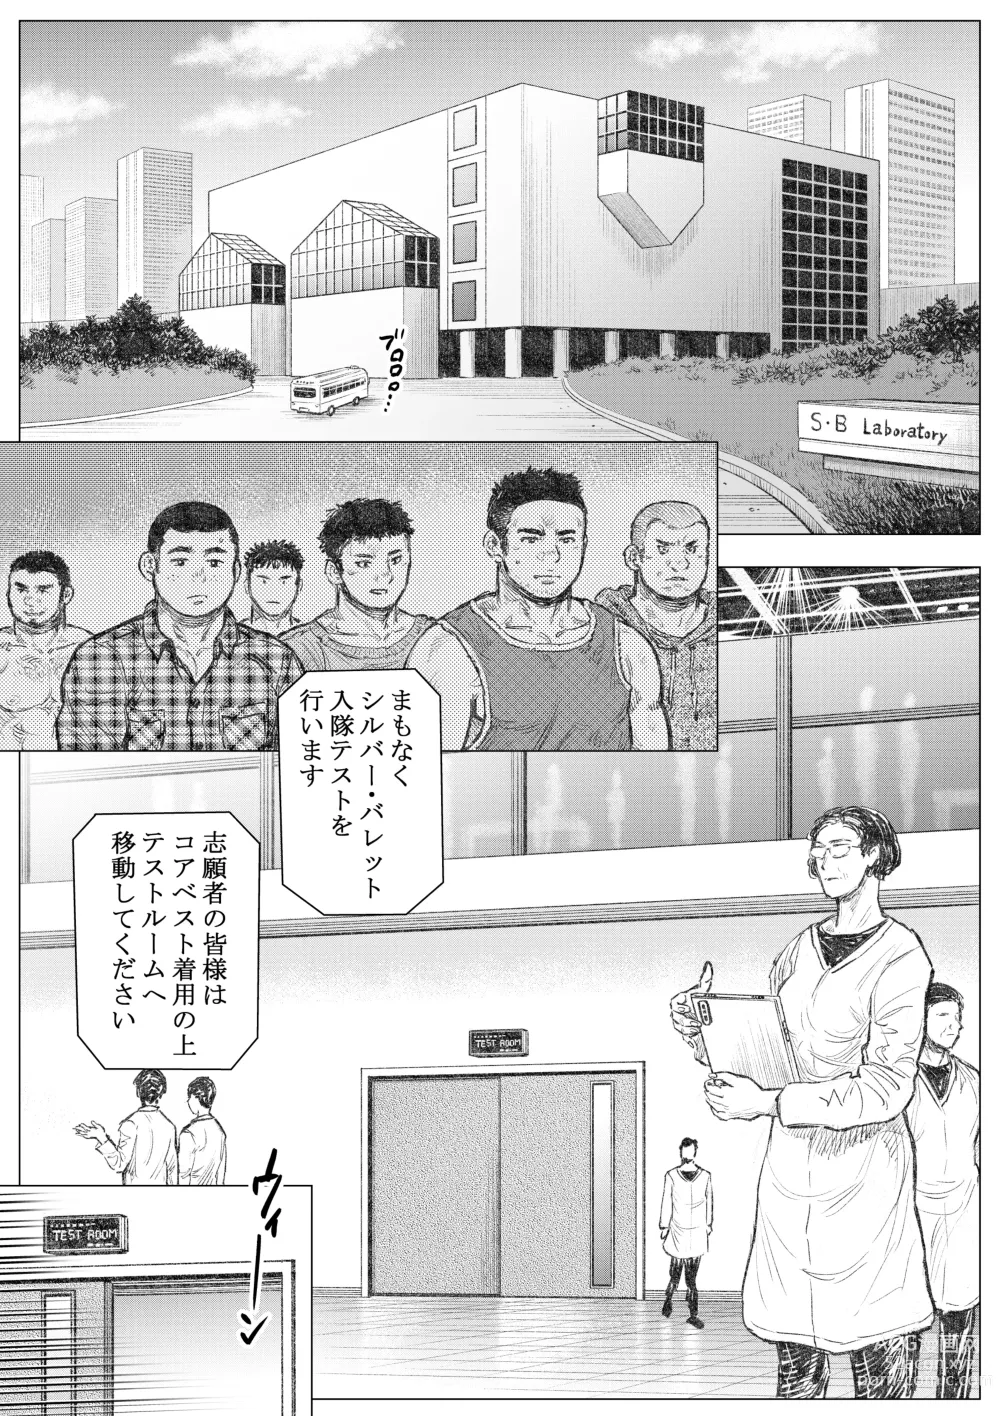 Page 2 of doujinshi Senmetsu Sounyuu Kousetsutai